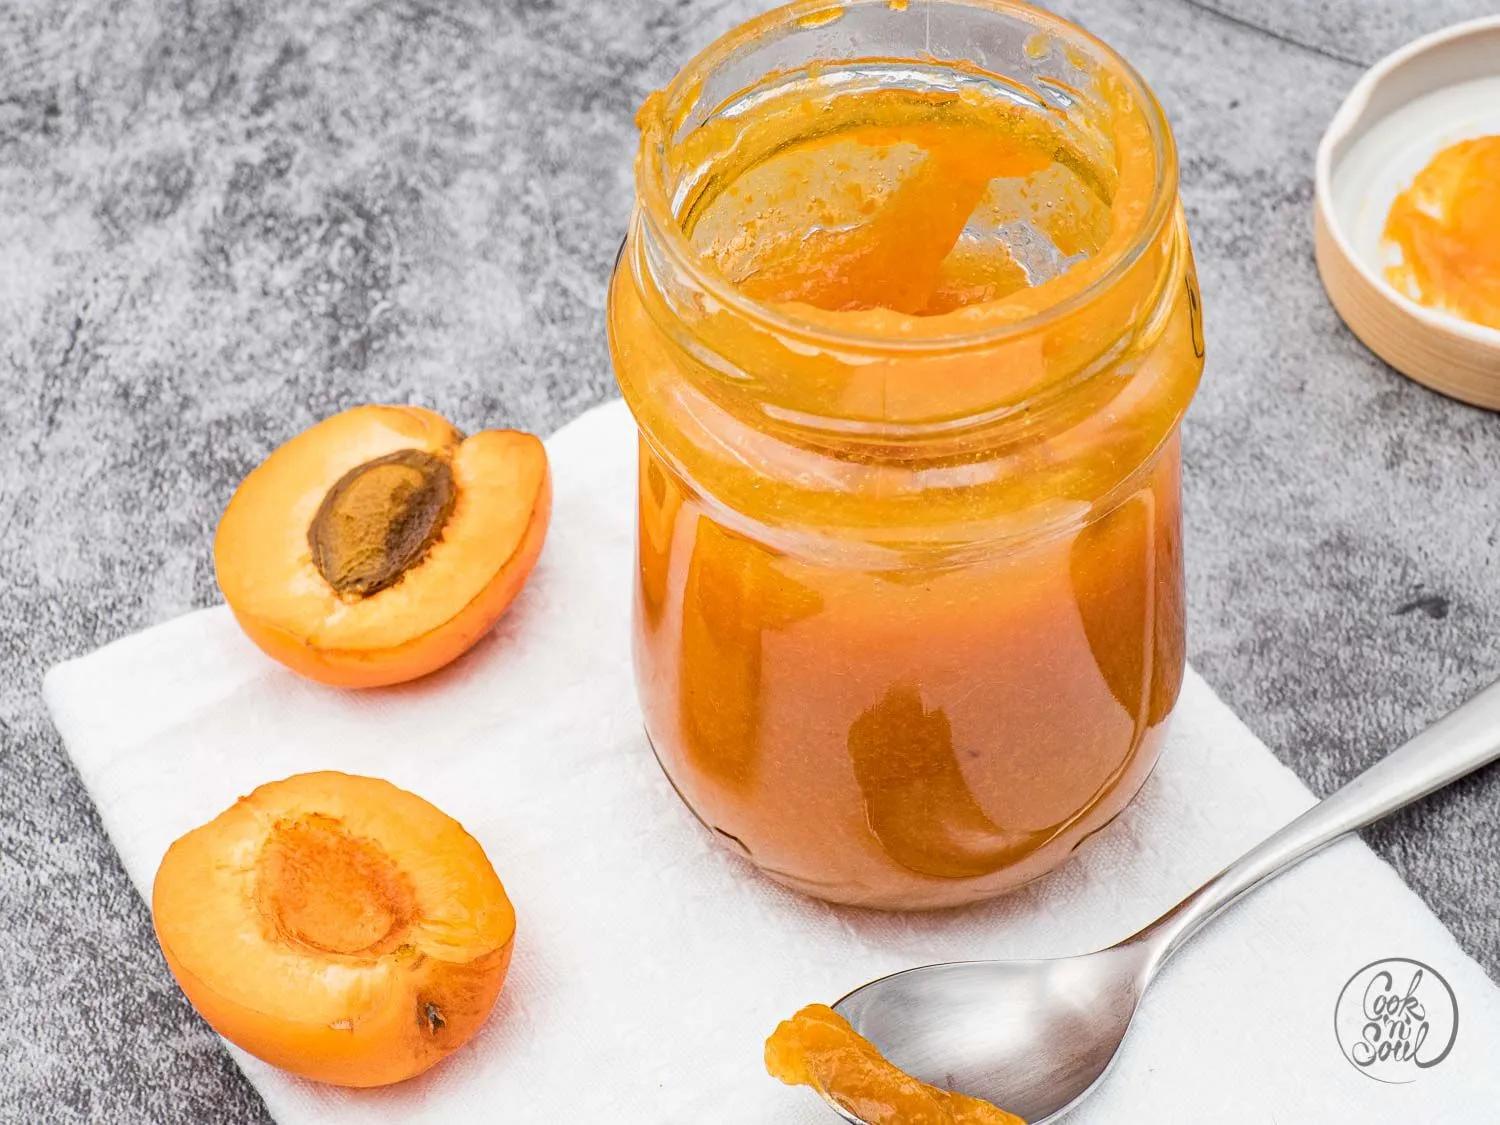 Aprikosenmarmelade - himmlisch fruchtig selbst gemacht | cooknsoul.de ...